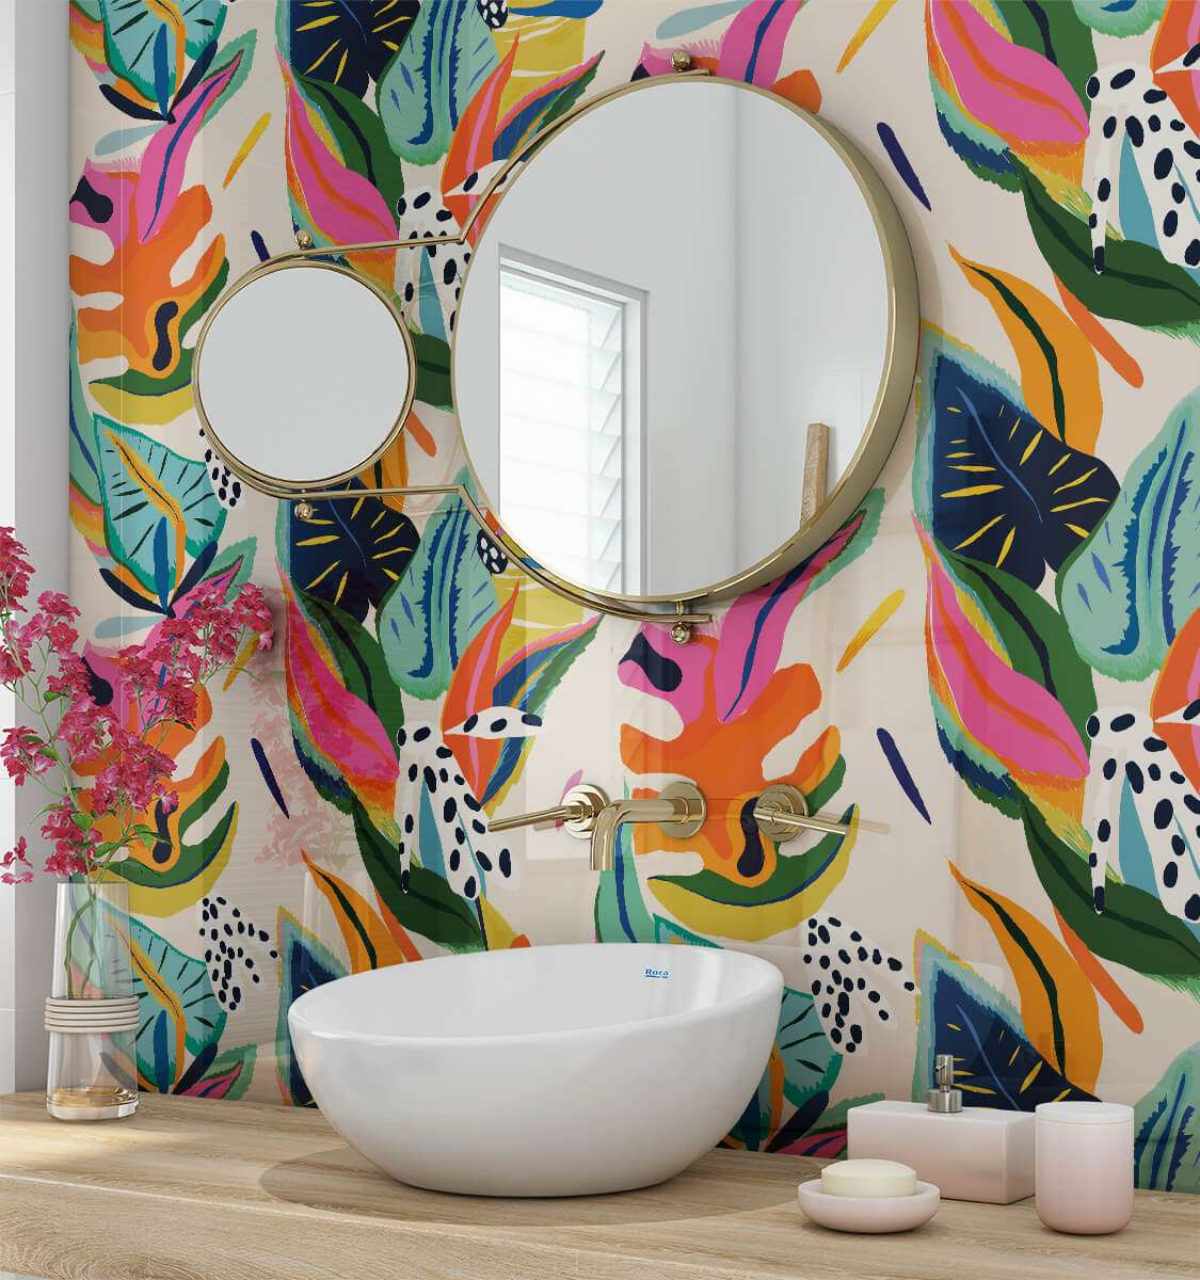 kreative und mehrfarbige ideen fuer wandgestaltung im badezimmer